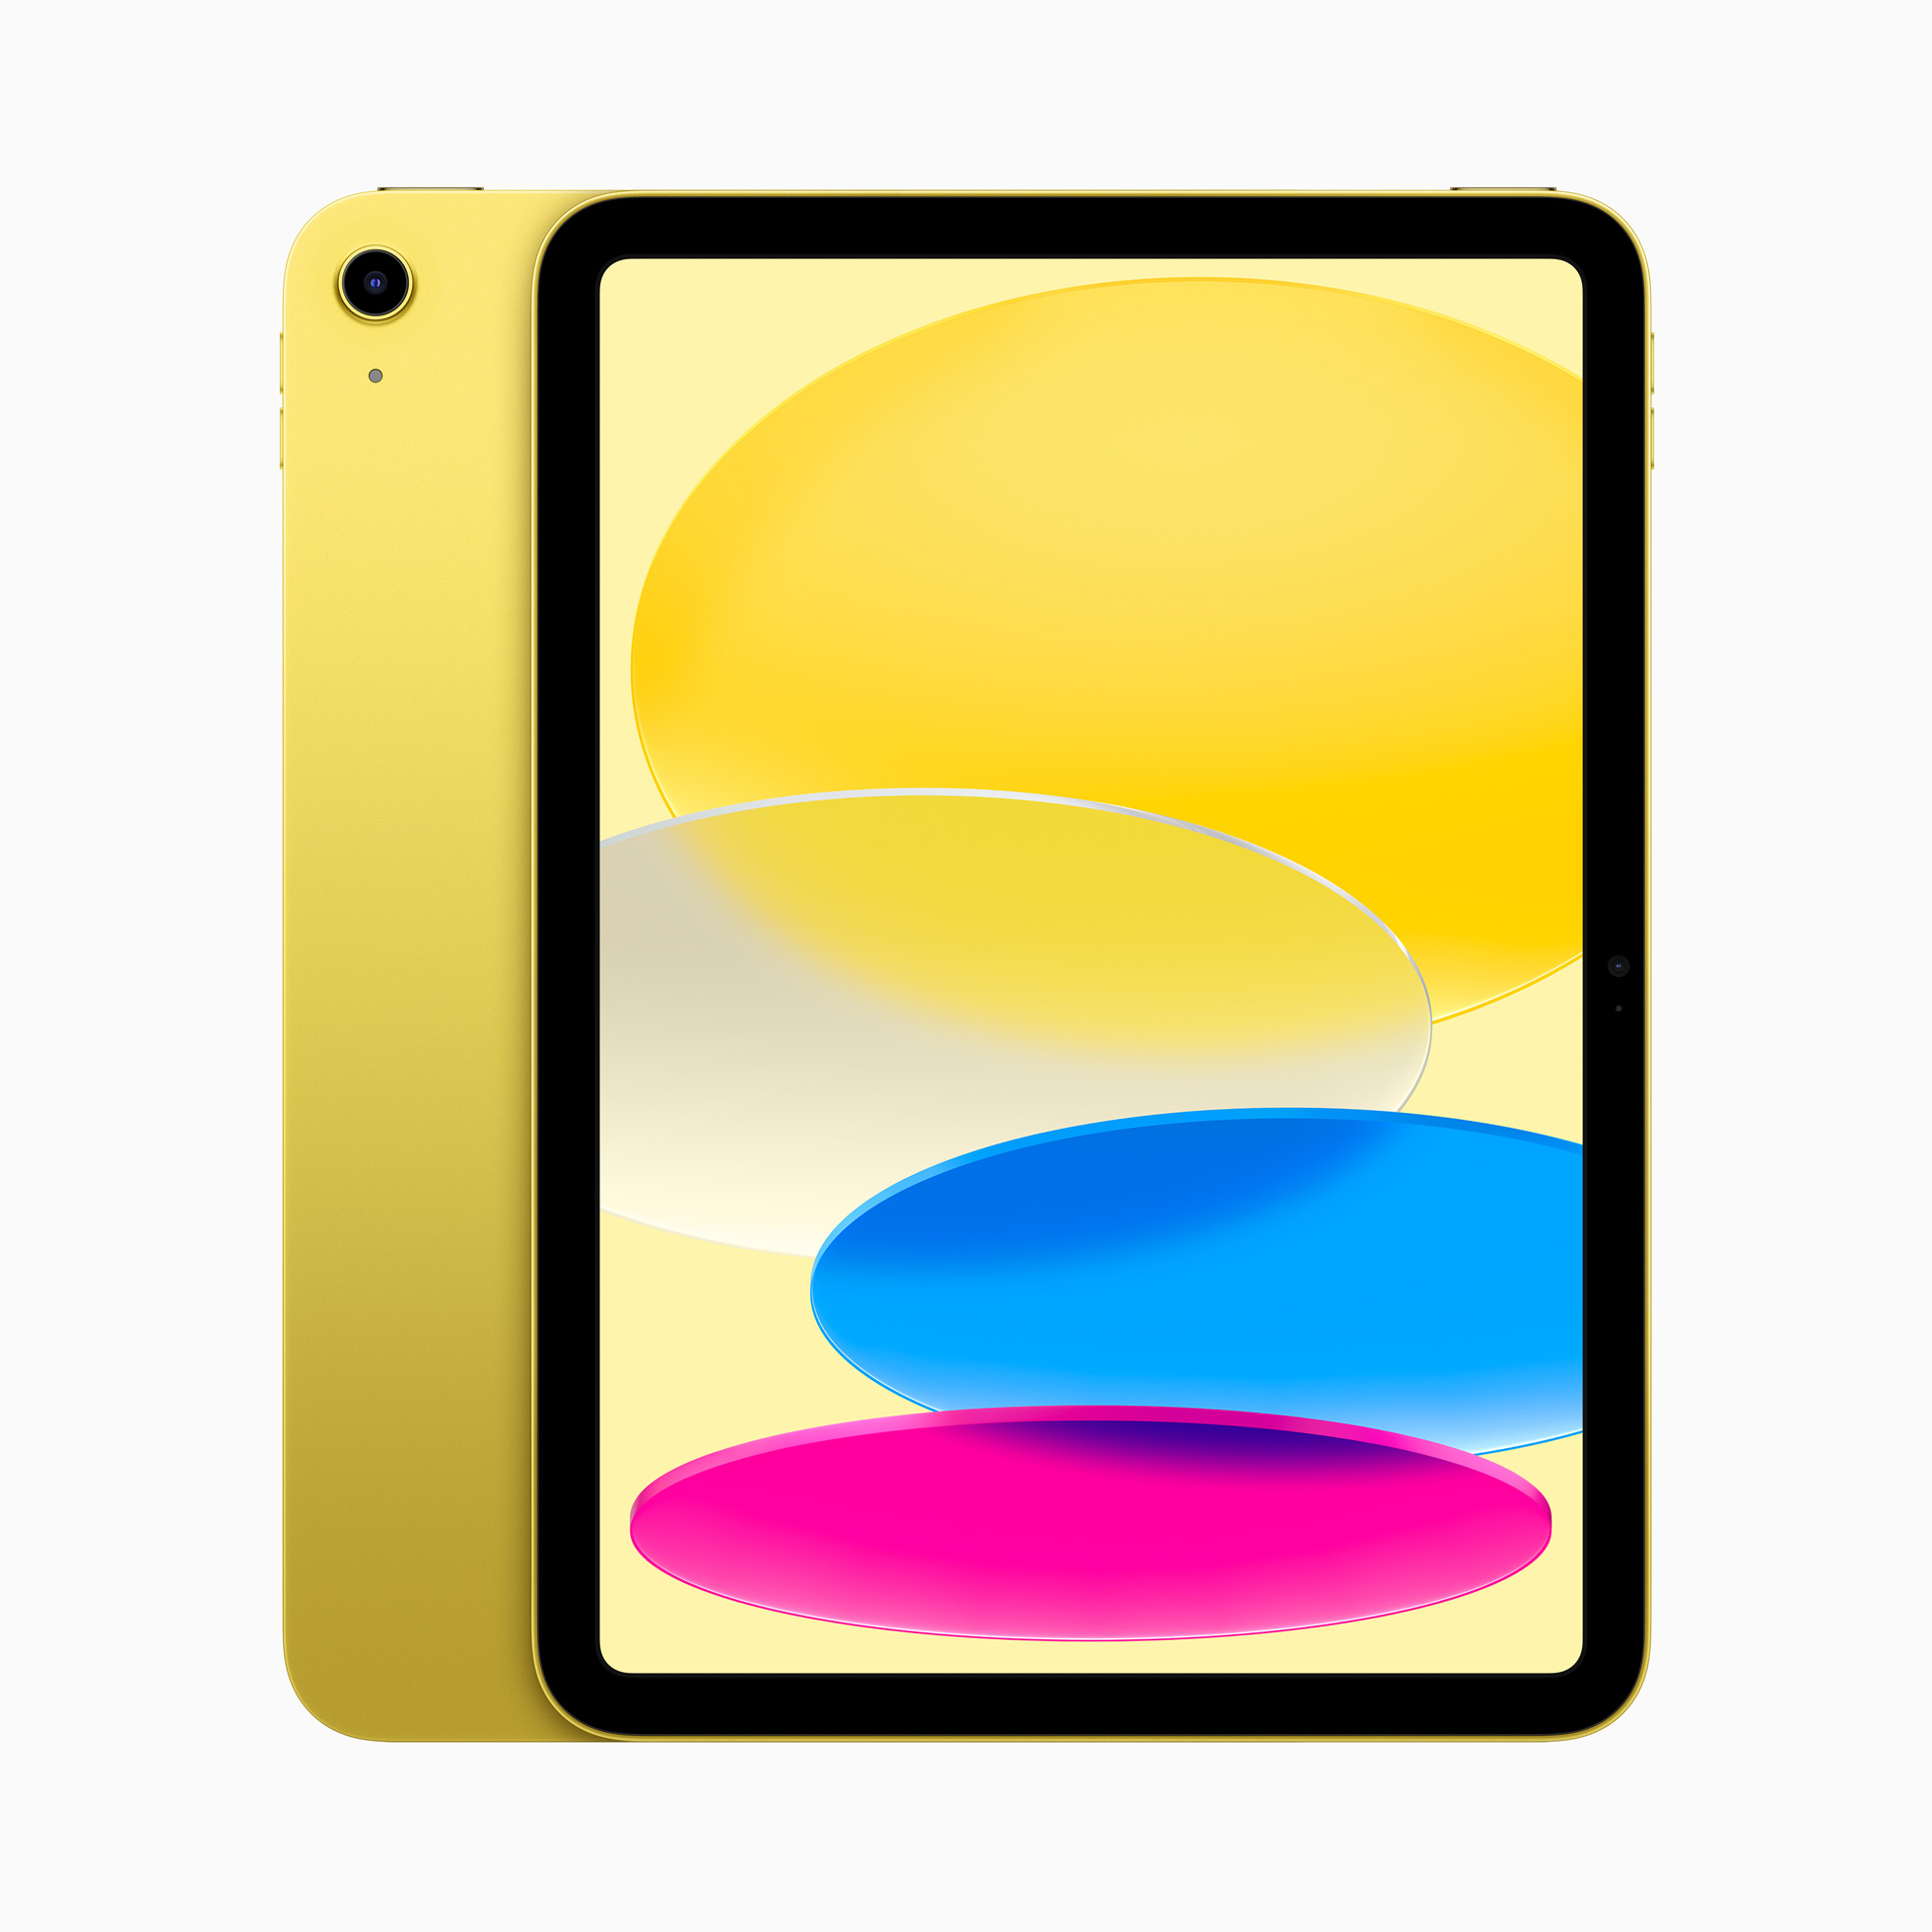 Apple ra mắt iPad Gen 10 với thiết kế hoàn toàn mới, màn hình 10.9-inch cùng cổng USB-C